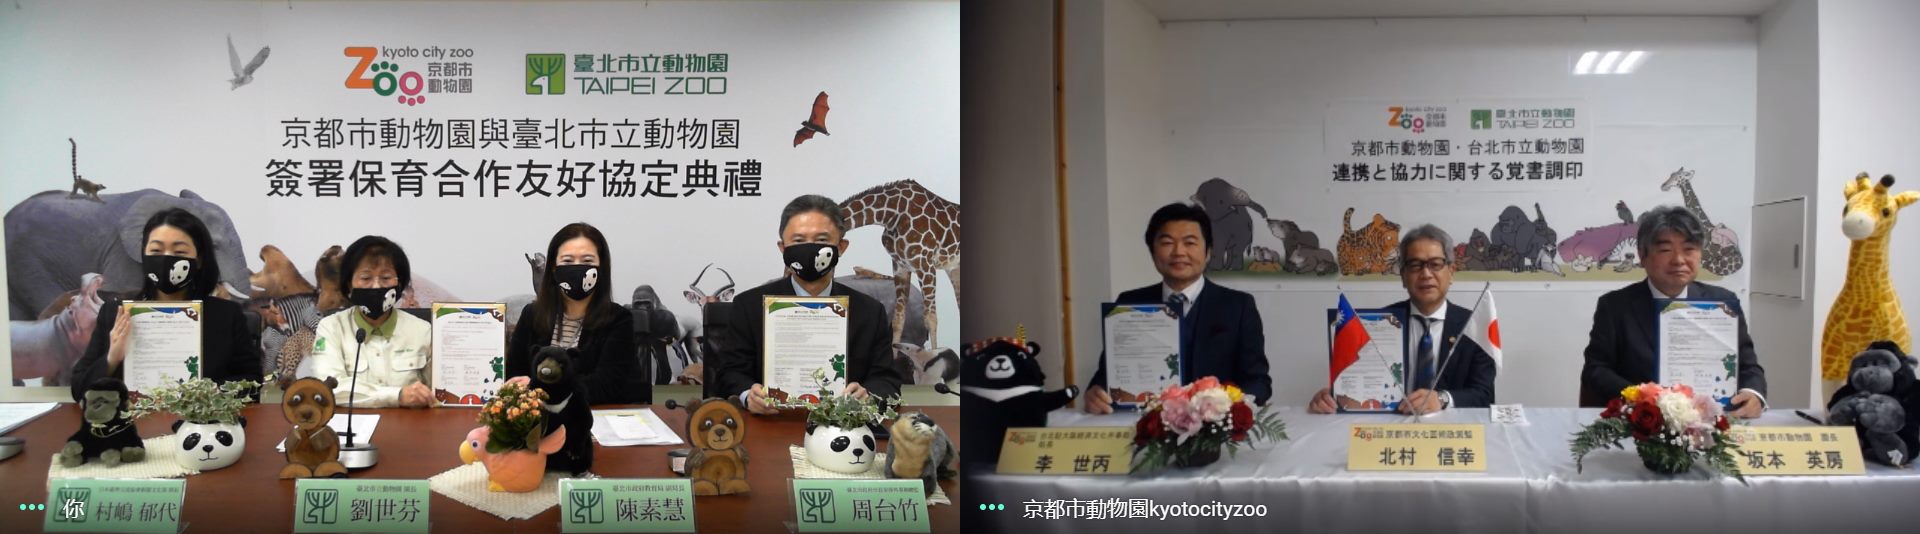 臺北市立動物園和京都市動物園於今日採用線上儀式，完成保育合作友好協定的簽署